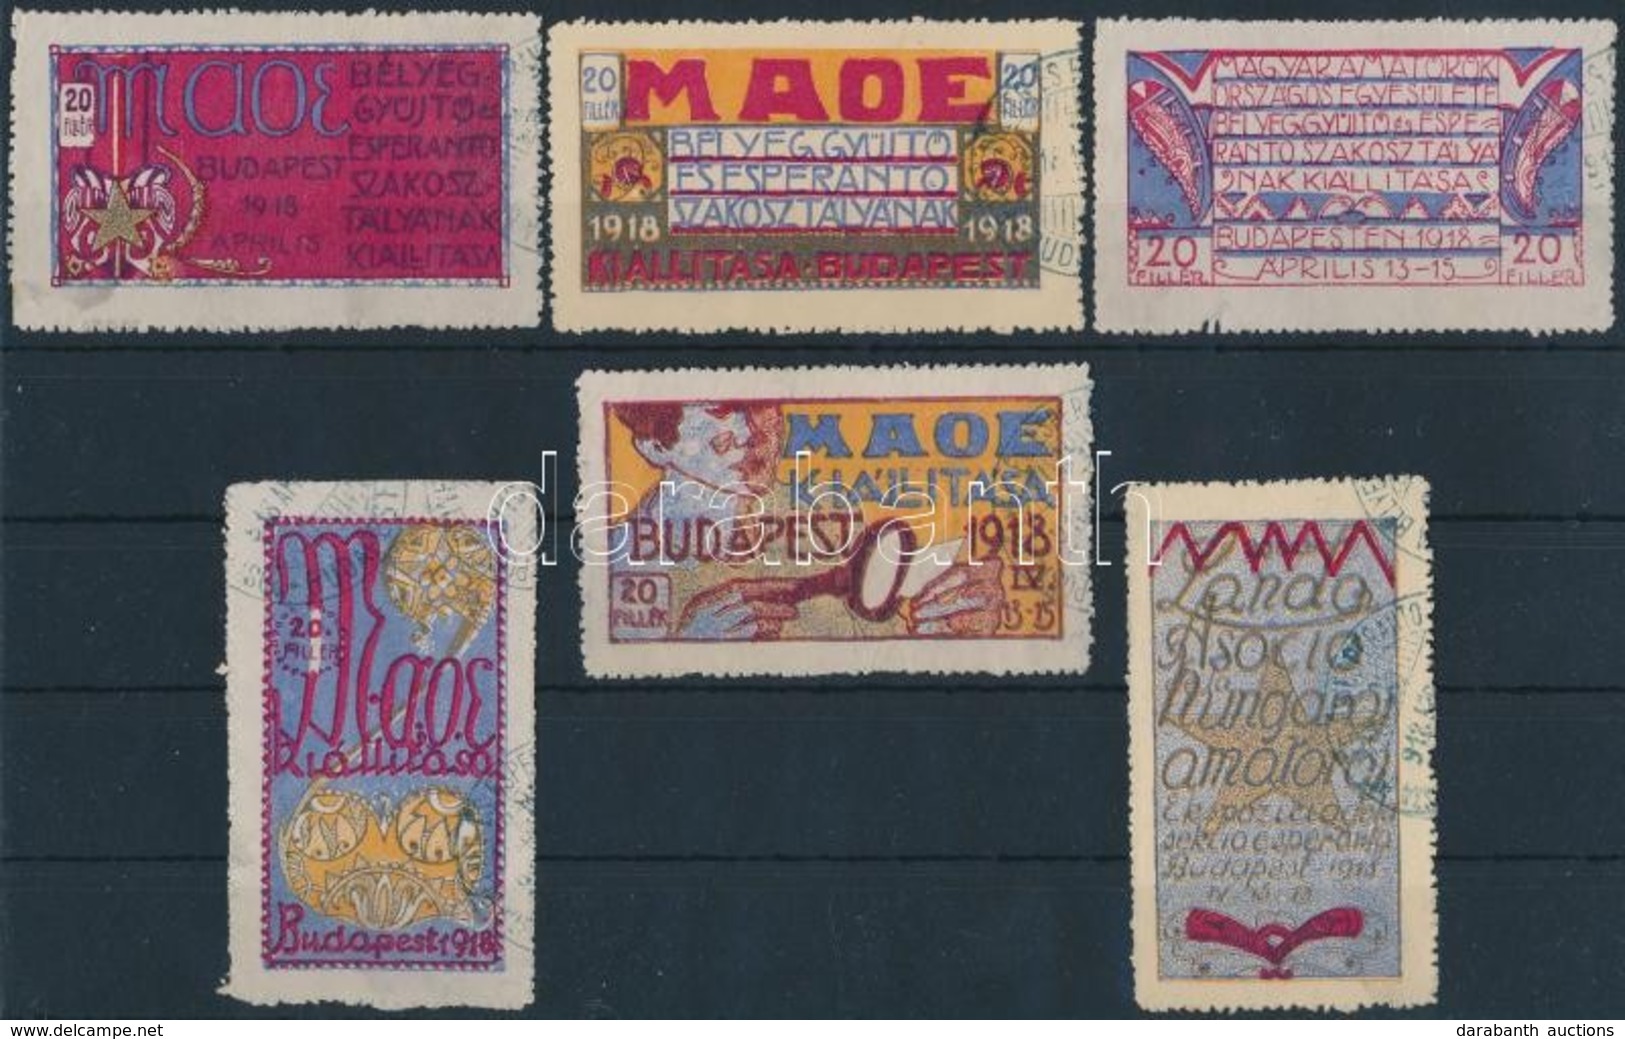 1918 6 Db Szecessziós Levélzáró A MAOE Bélyeggyűjtő és Eszperantó Kiállításról / Labels From MAOE Exhibition - Ohne Zuordnung